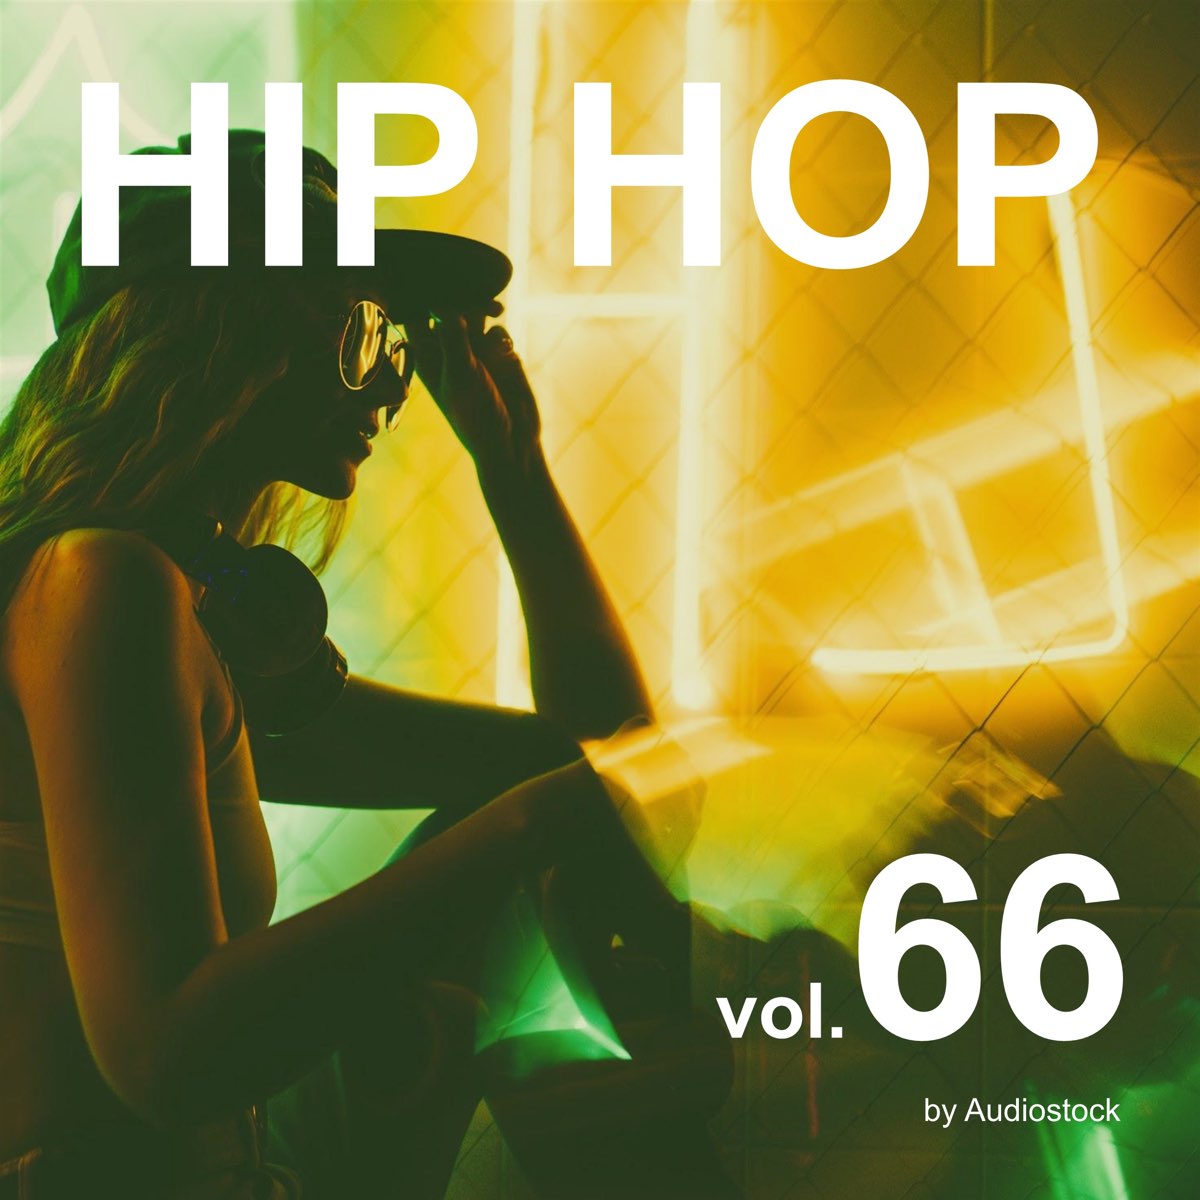 ‎ヴァリアス・アーティストの「hip Hop Vol 66 Instrumental Bgm By Audiostock」をapple Musicで 2107